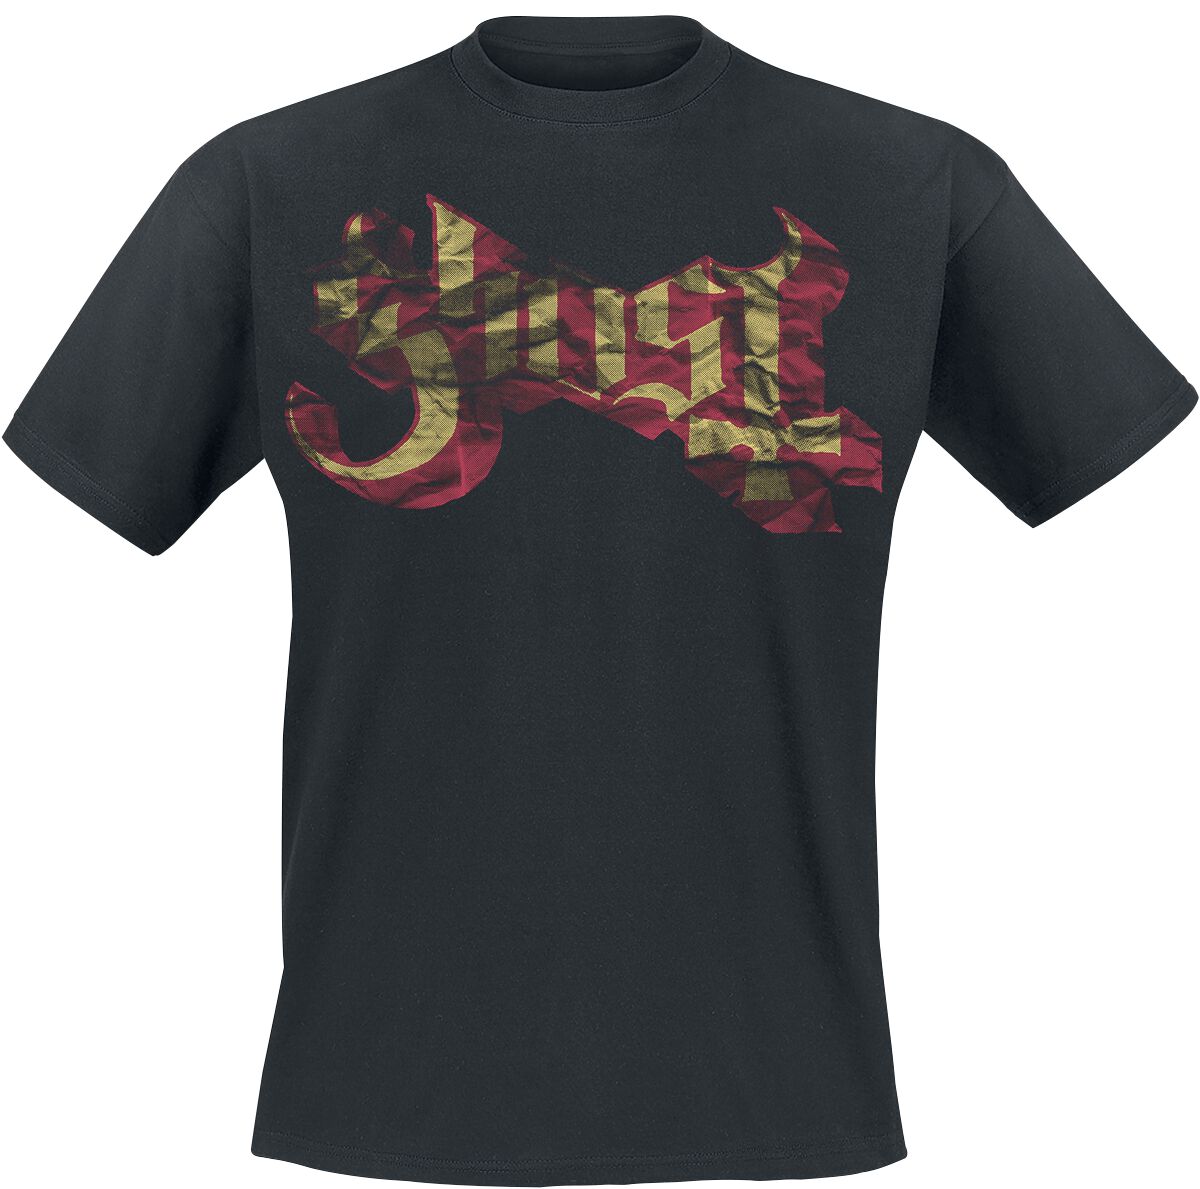 Ghost T-Shirt - Large Logo - S bis XXL - für Männer - Größe M - schwarz  - Lizenziertes Merchandise!